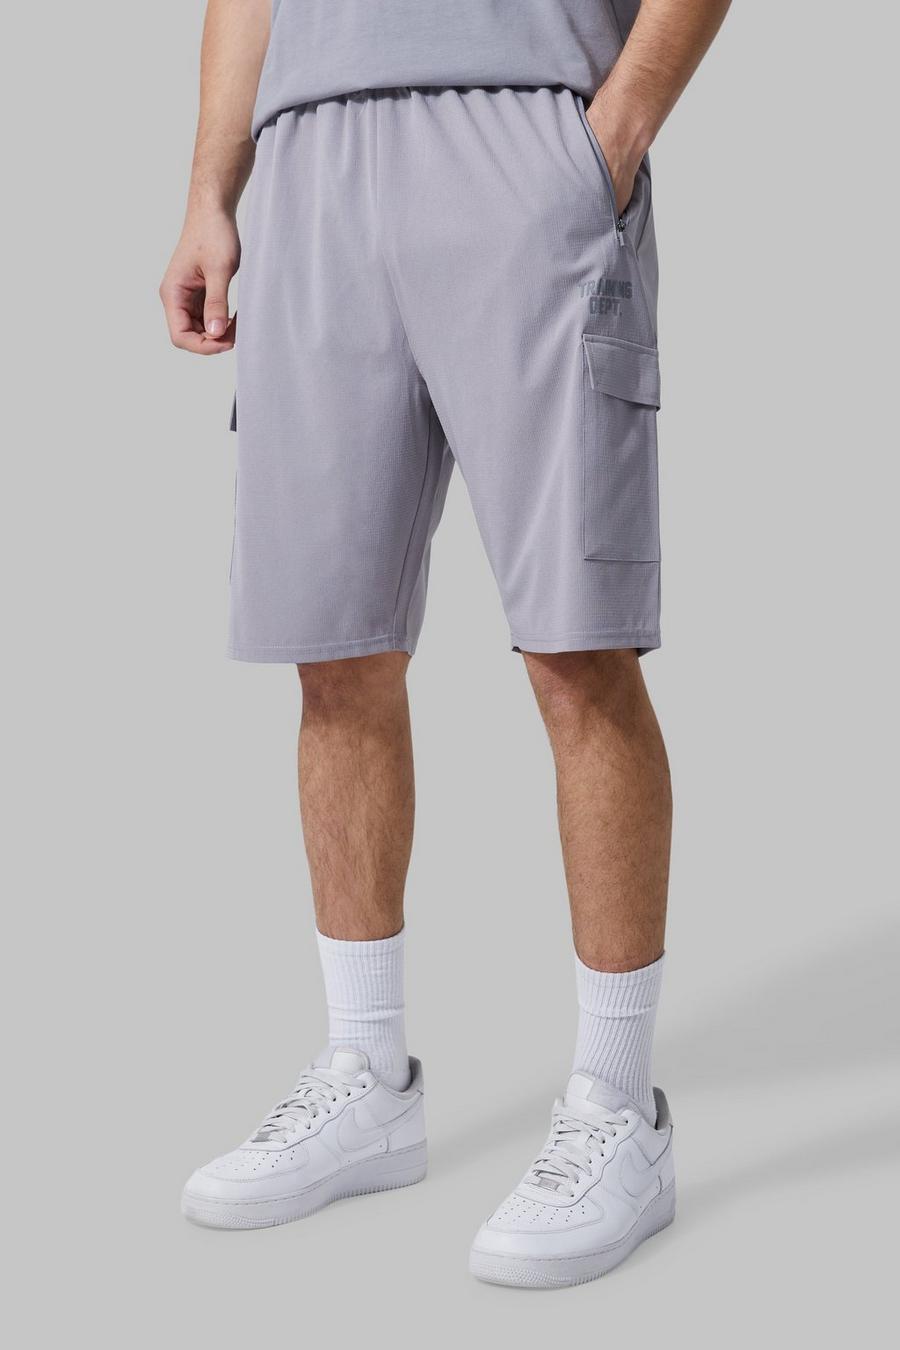 Pantalón corto Tall Active cargo, Light grey